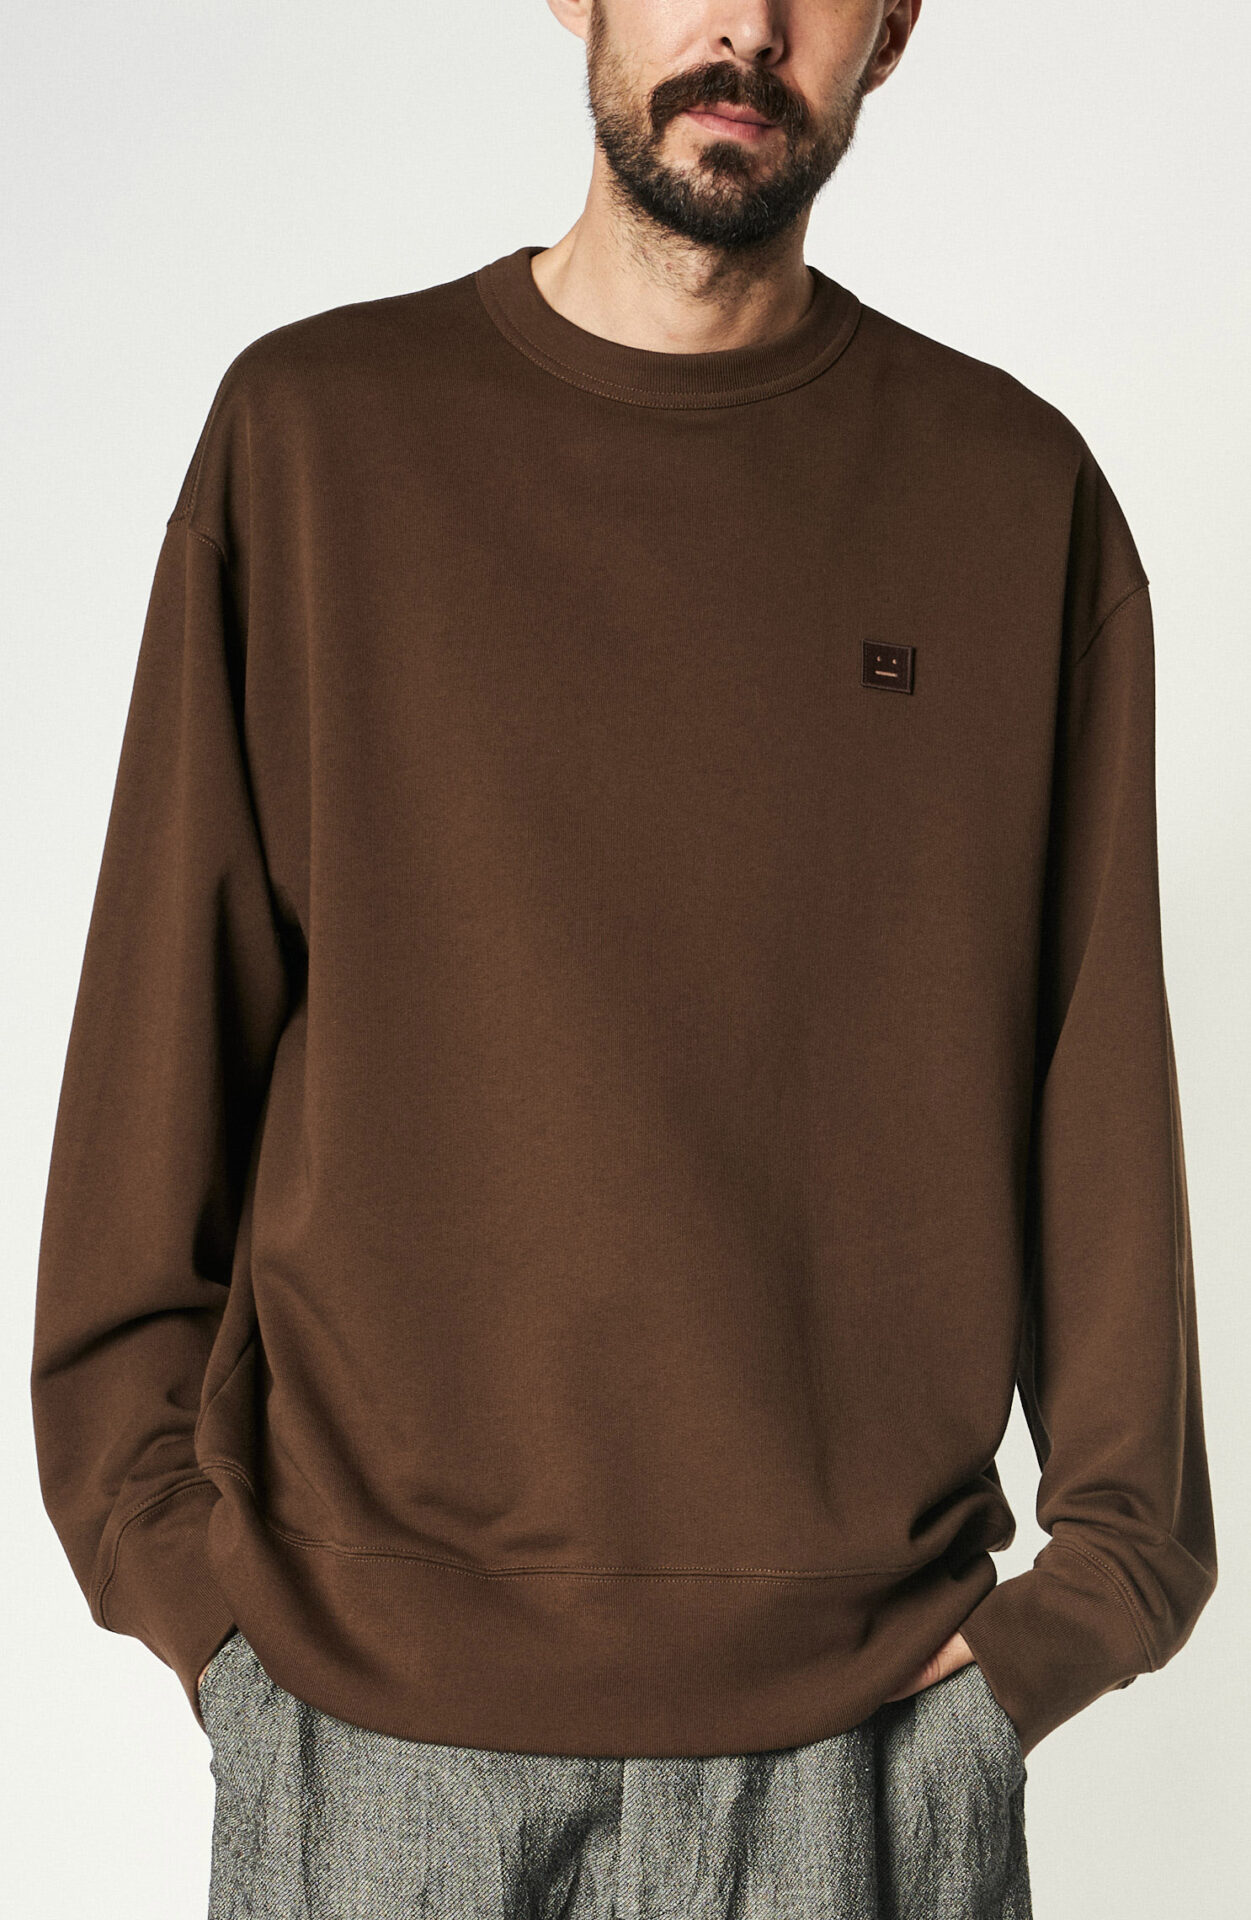 Acne Studios - Dark brown cotton sweater - Schwittenberg